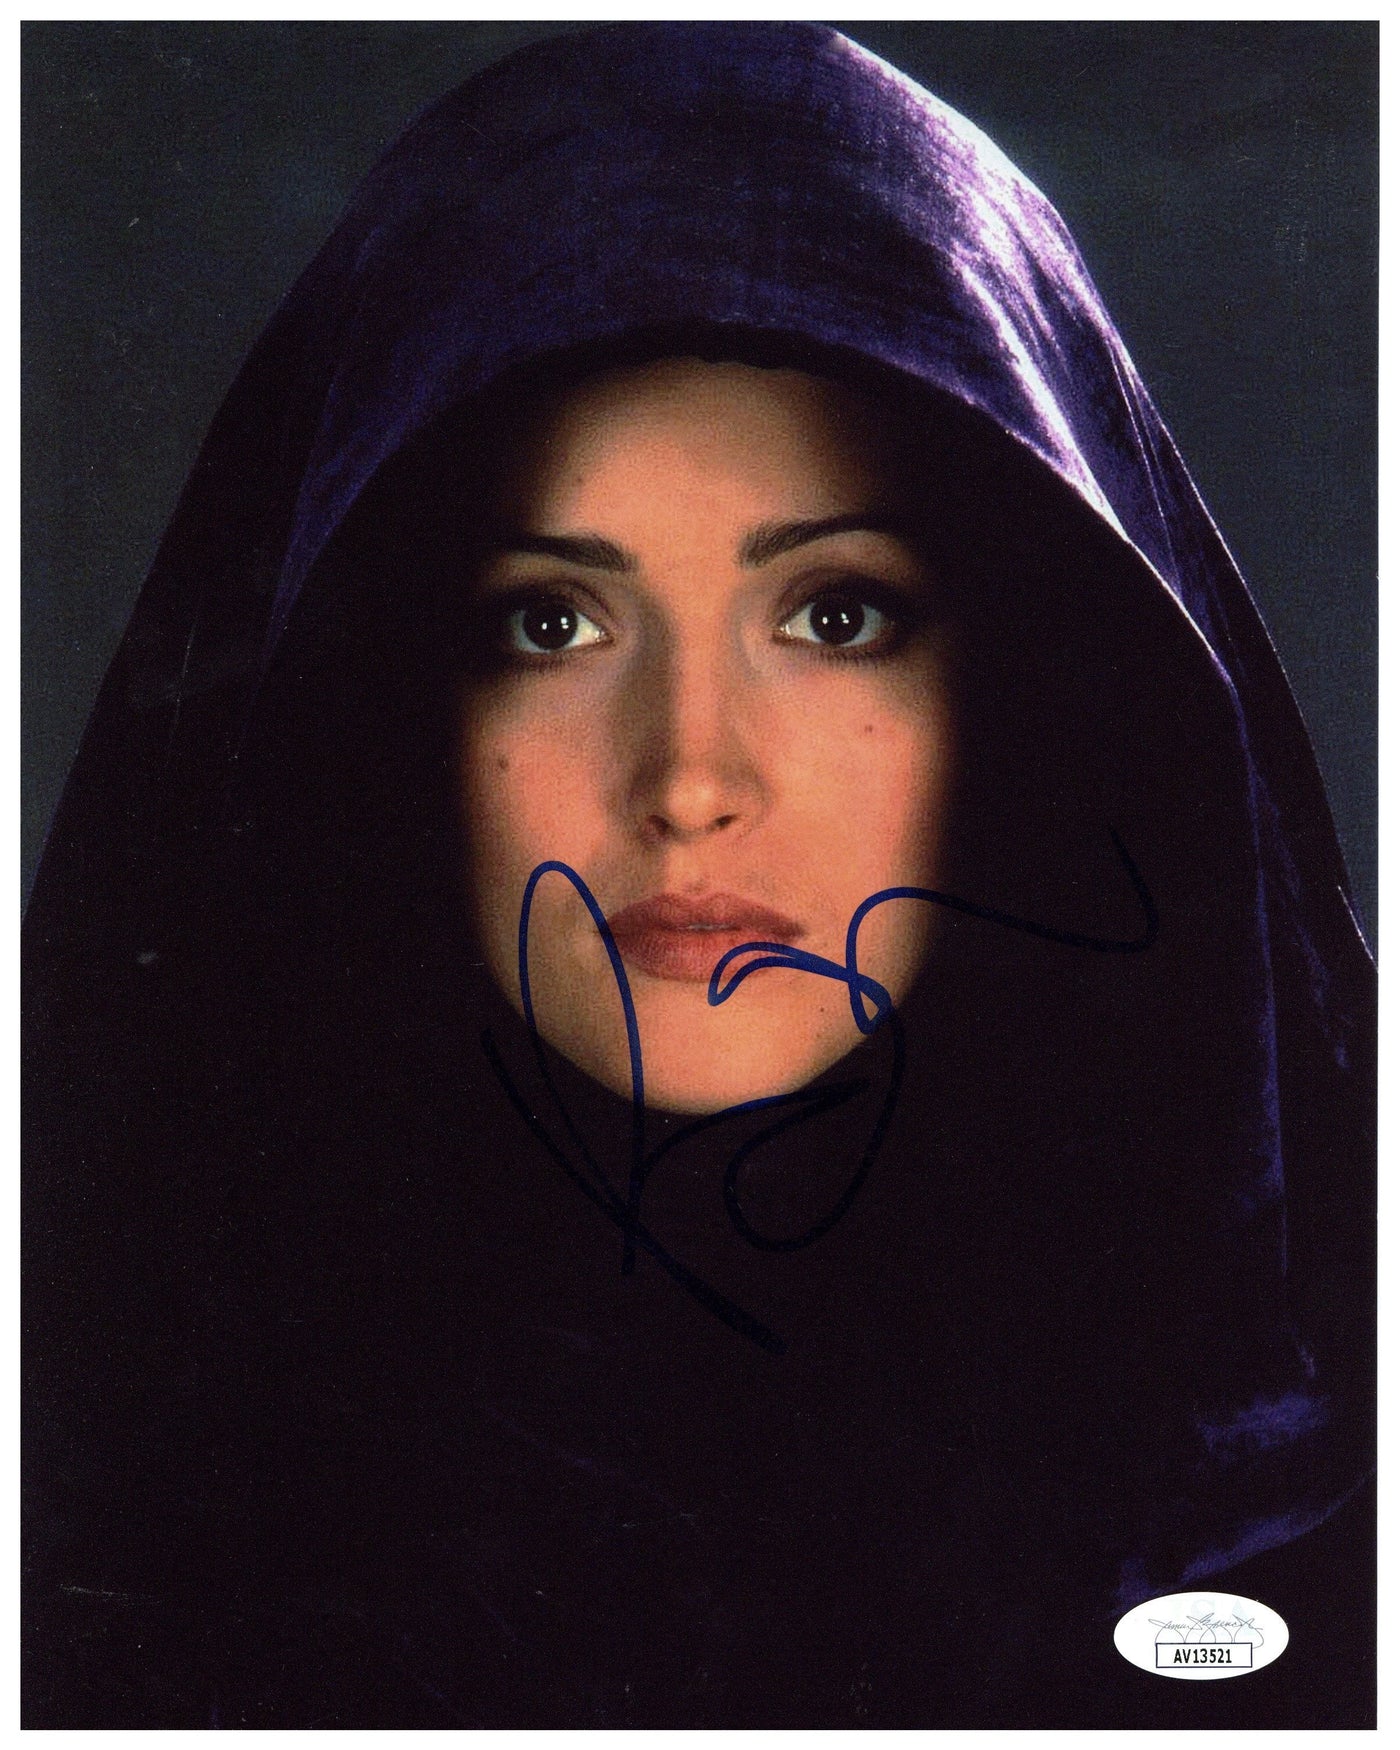 Rose Byrne Signed 8x10 Photo Star Wars Ep II Autographed JSA COA